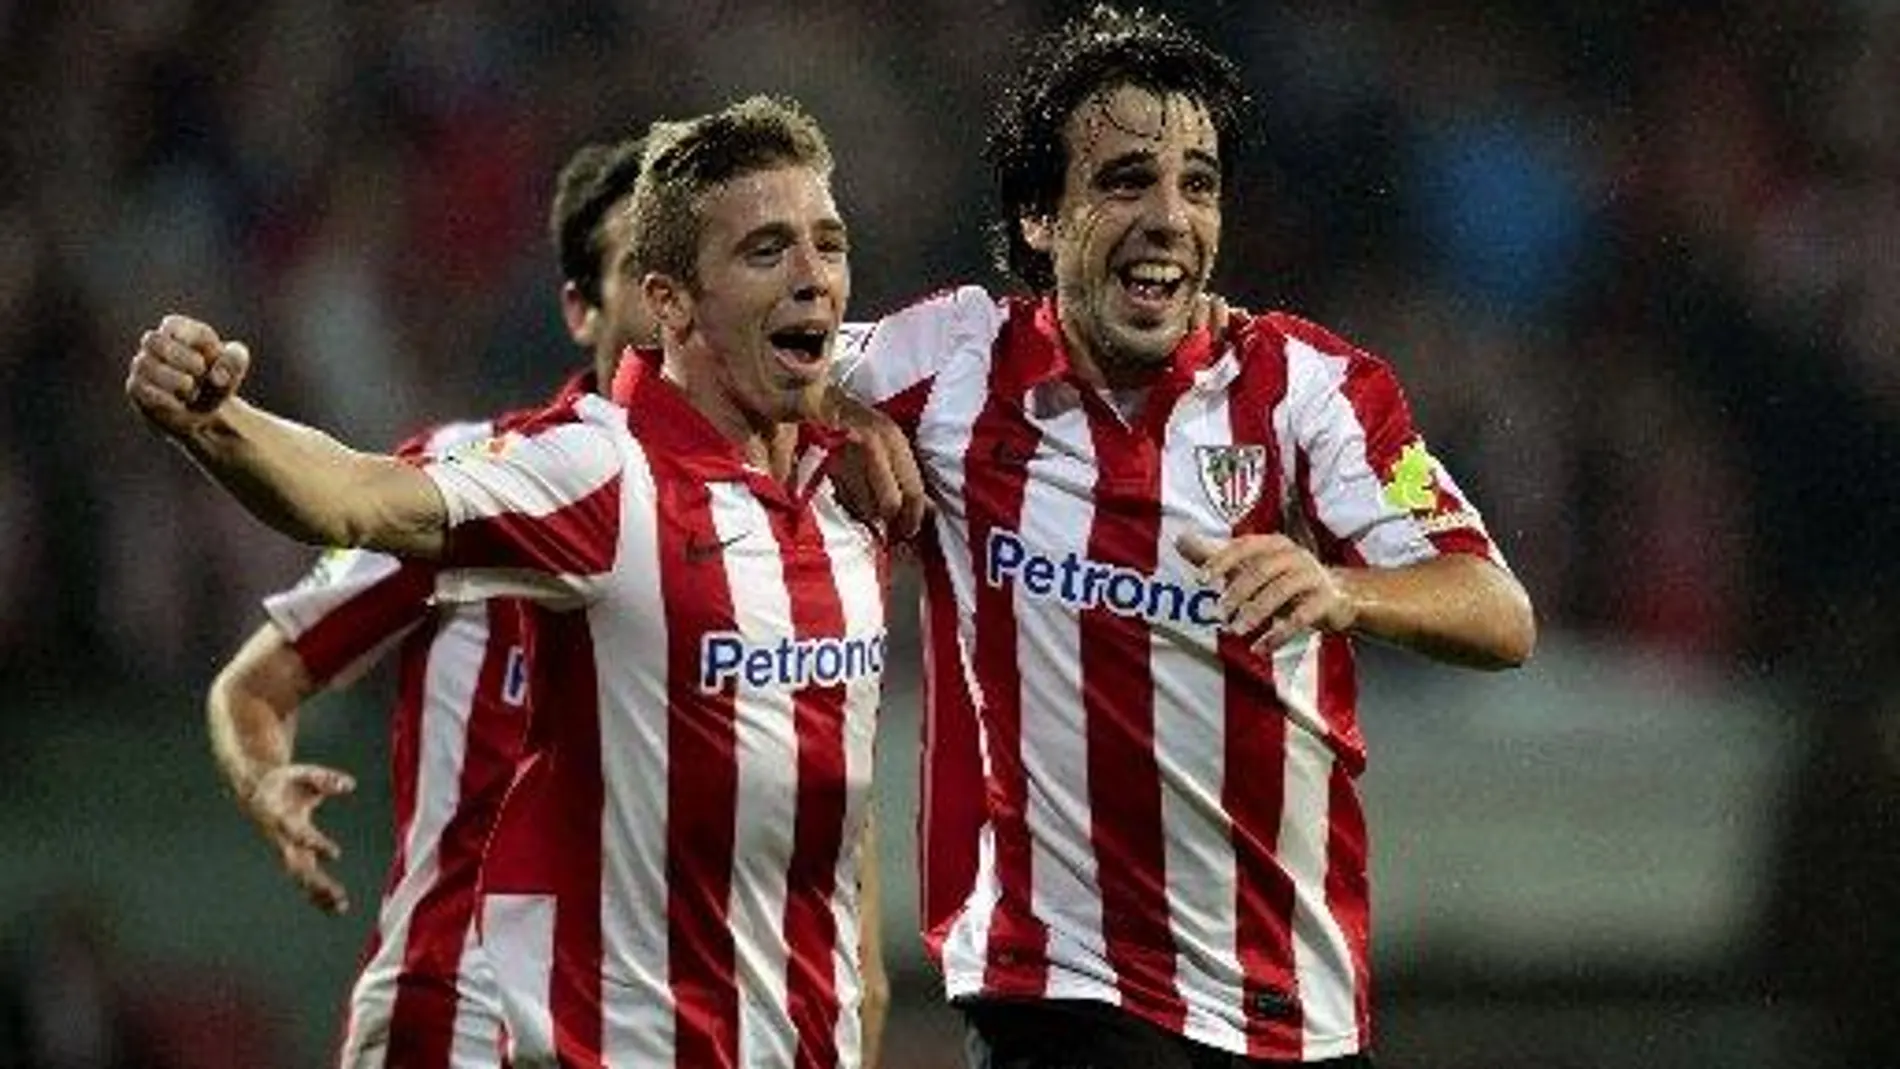 El jugador del Athletic de Bilbao Beñat (d) celebra junto a su compañero Muniain tras marcar el tercer gol ante el Celta de Vigo